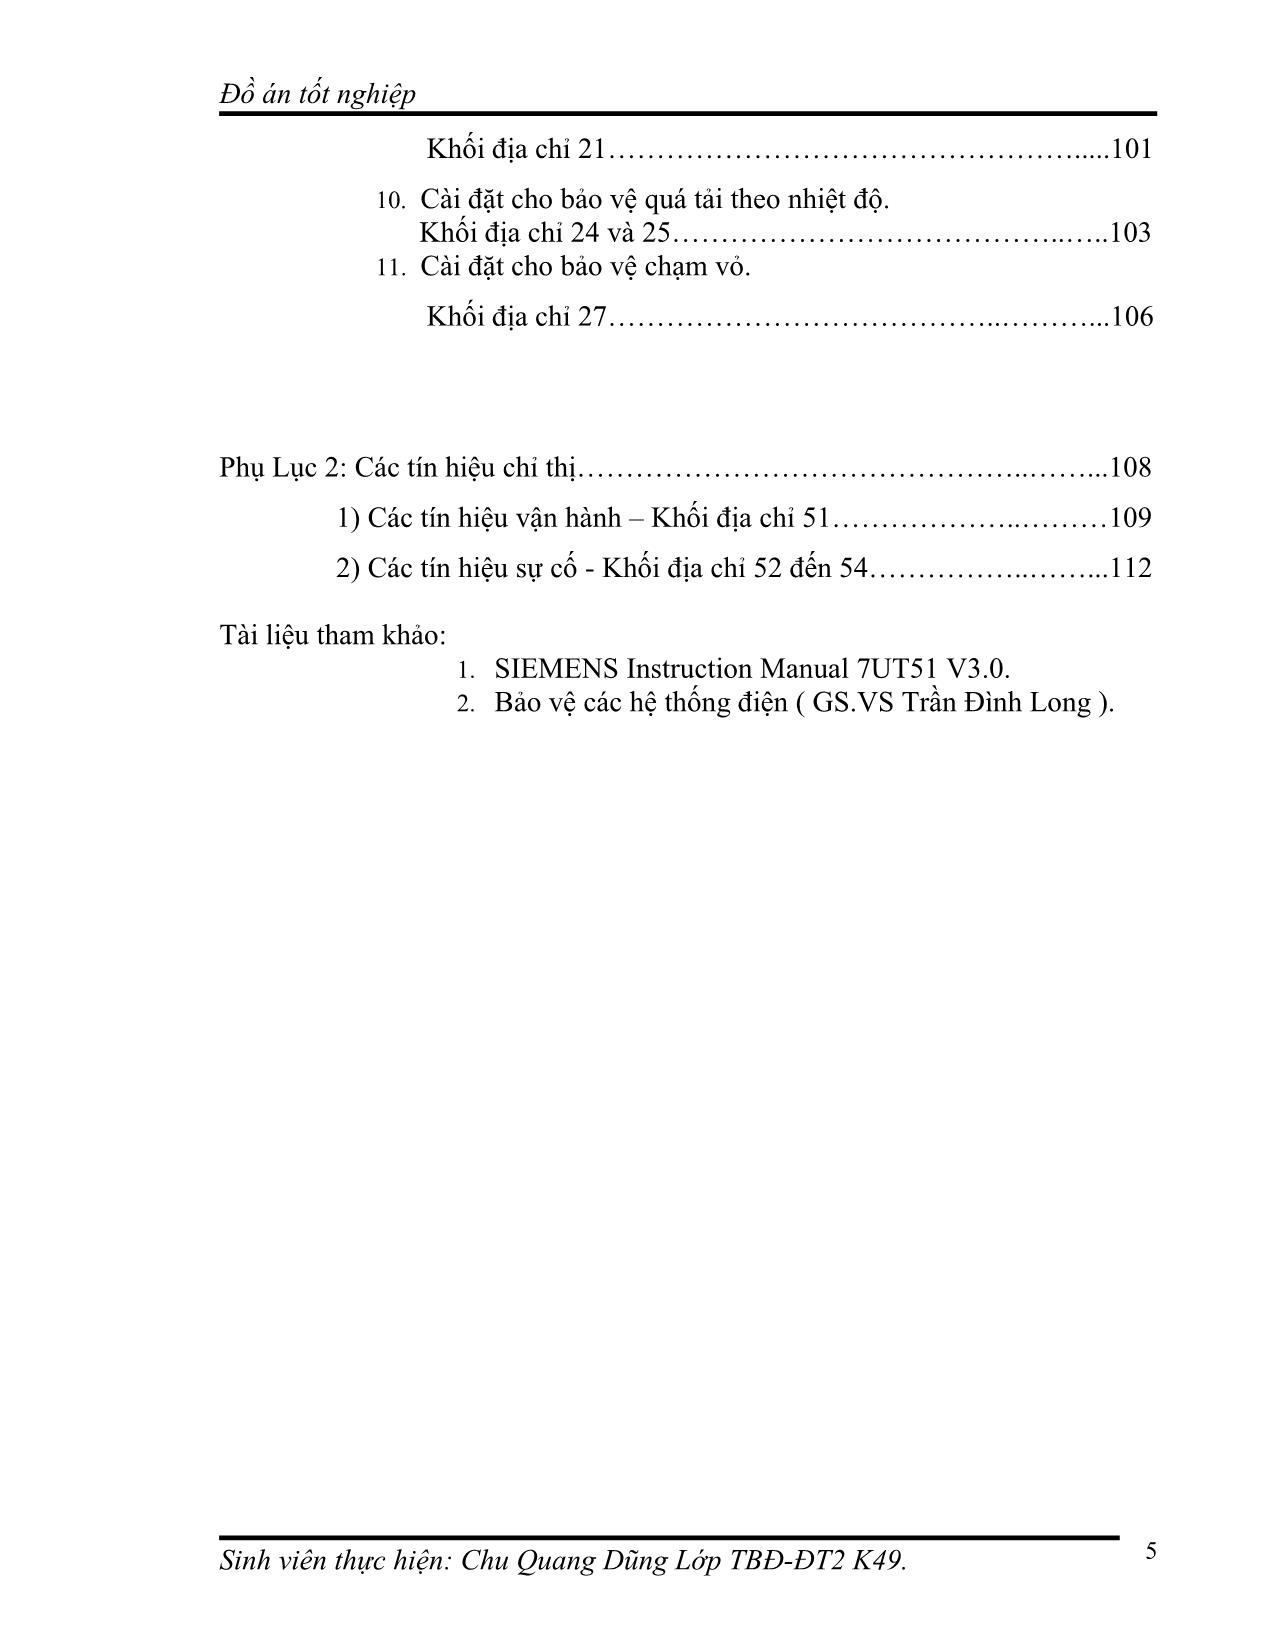 Đồ án Bảo vệ so lệch máy biến áp điện lực bằng rơ le số 7UT51x (Siemens) trang 5